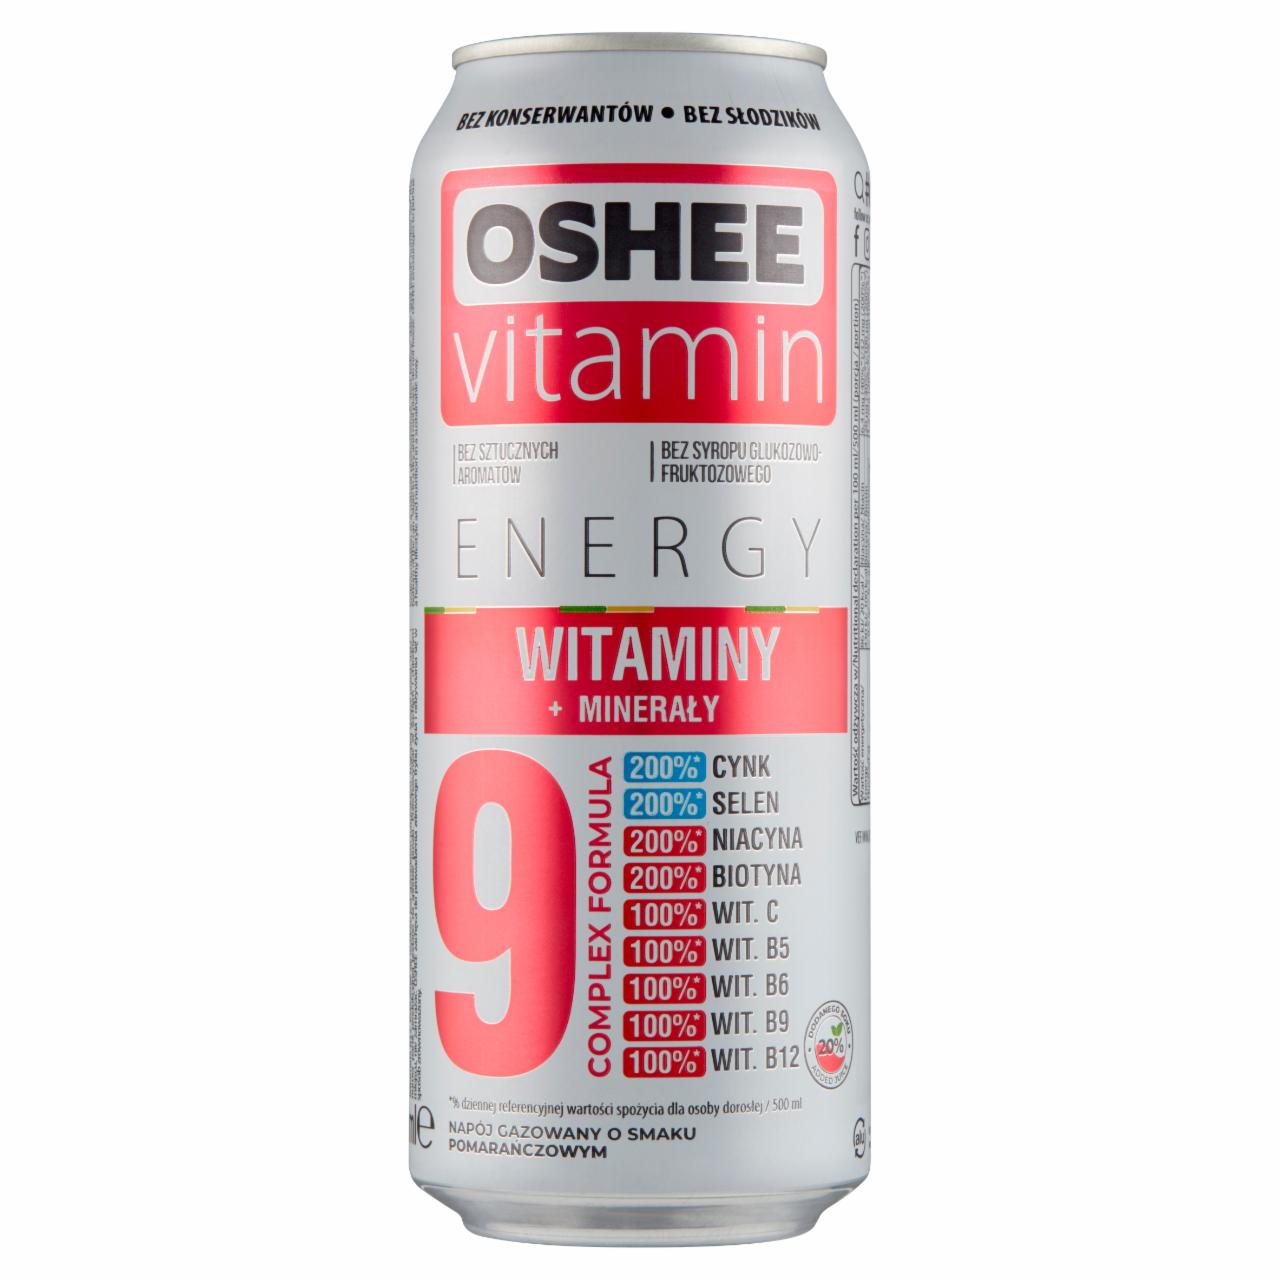 Zdjęcia - Oshee Vitamin Energy Napój gazowany o smaku pomarańczowym 500 ml